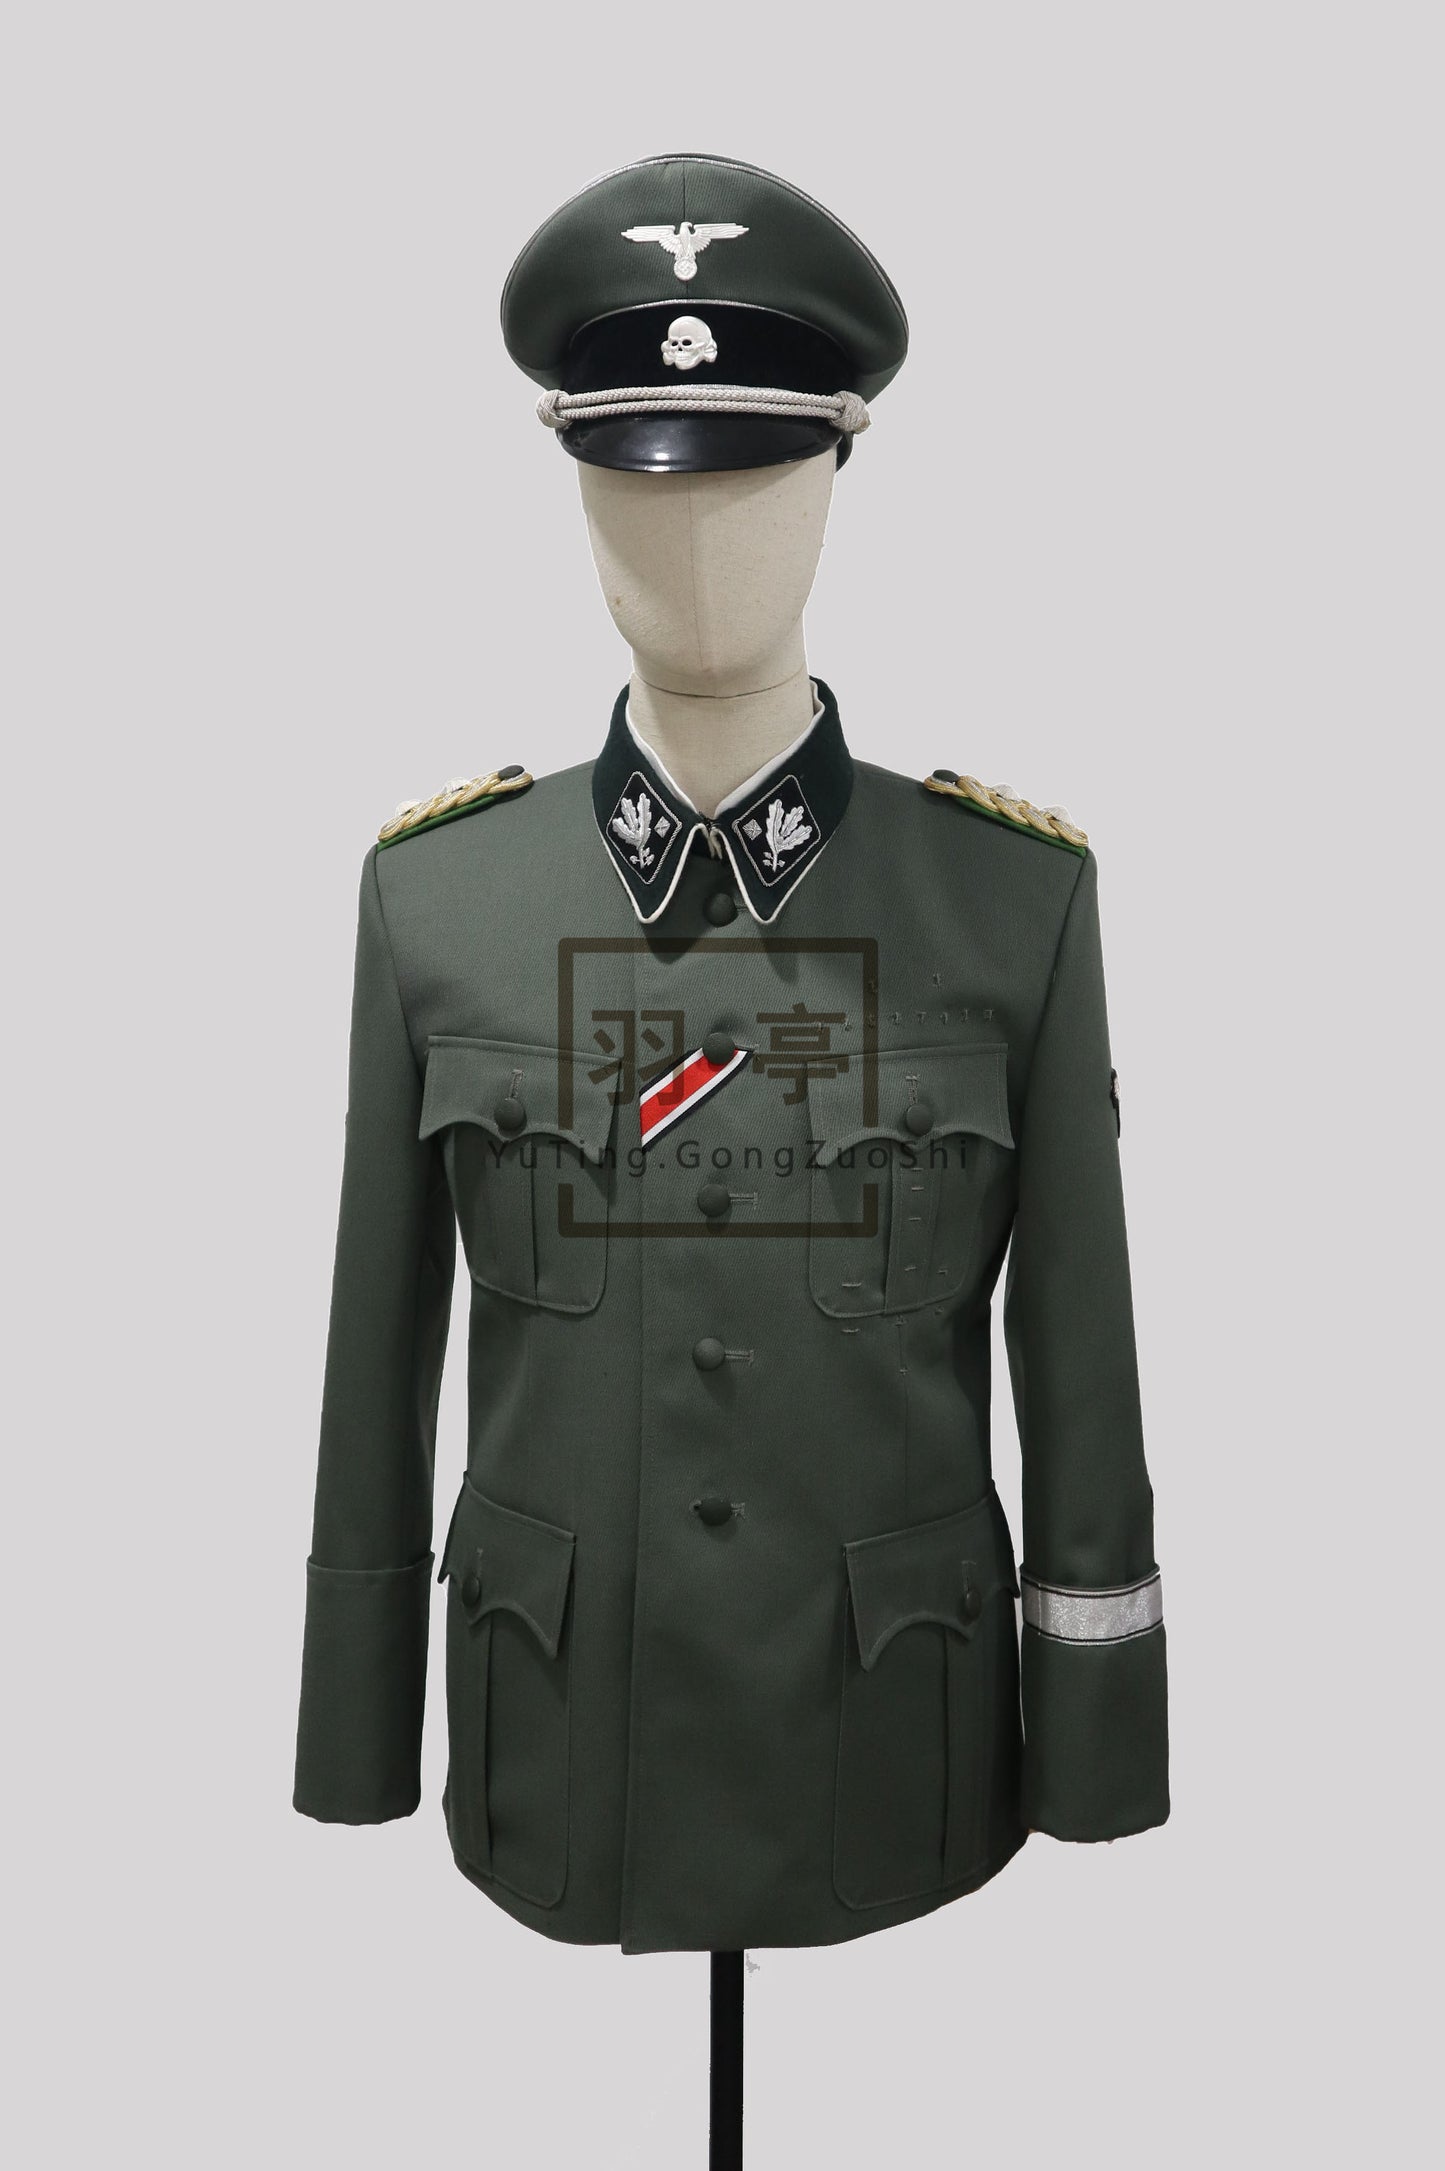 WWII German High-Quality Waffen SS m36—Heydrich